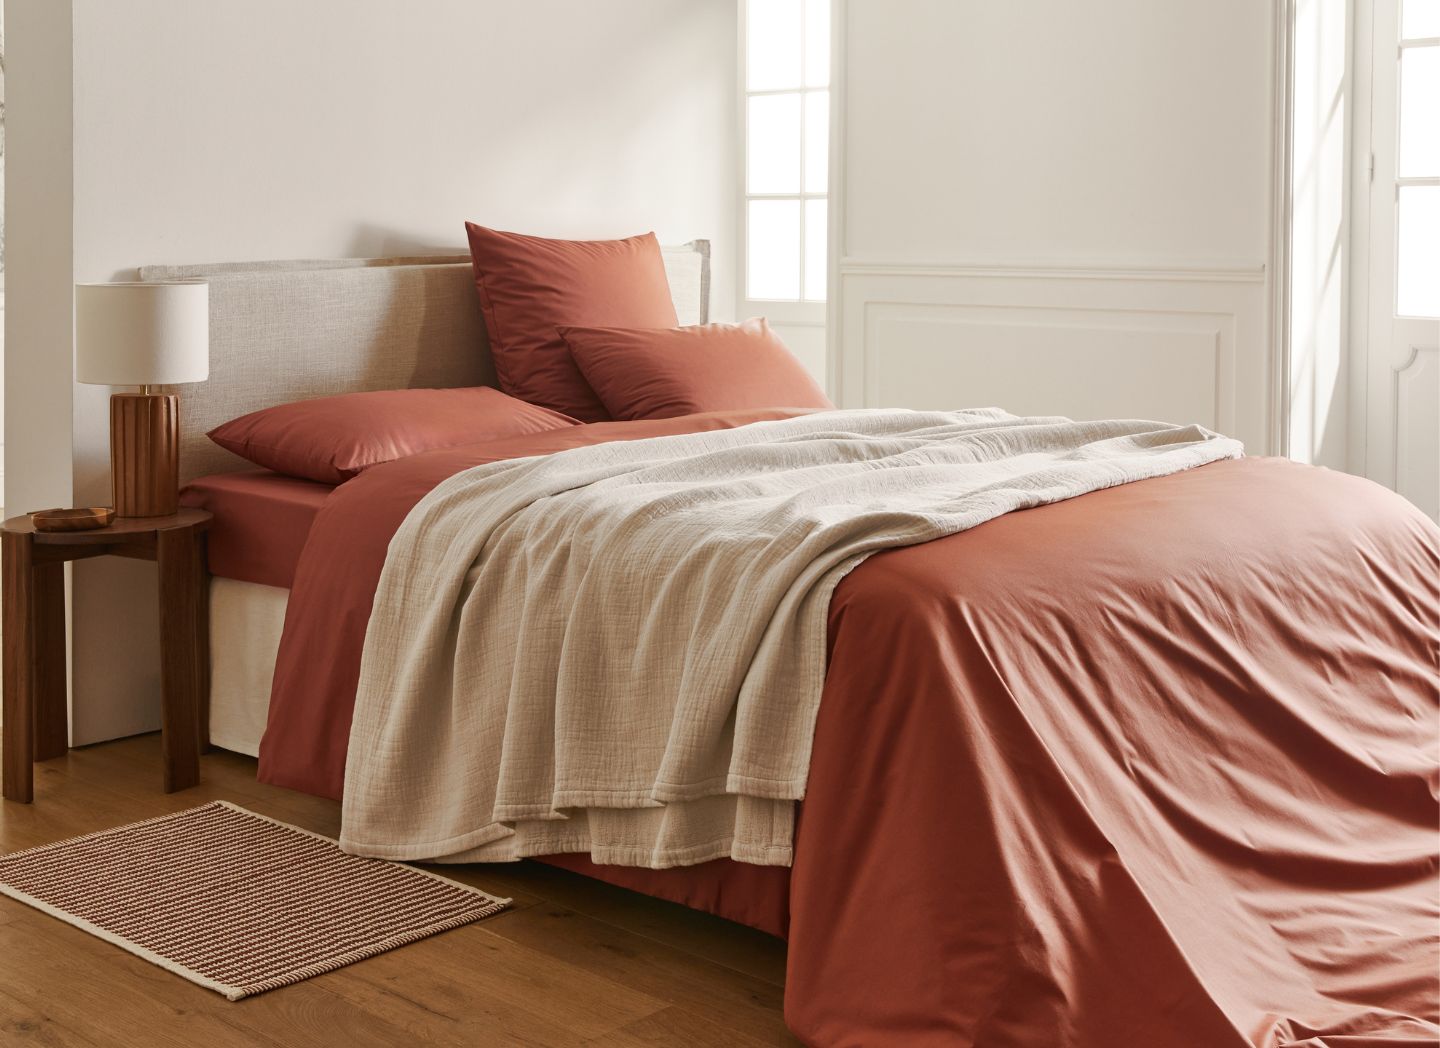 Choisir la taille des draps pour un lit de 160x200 cm